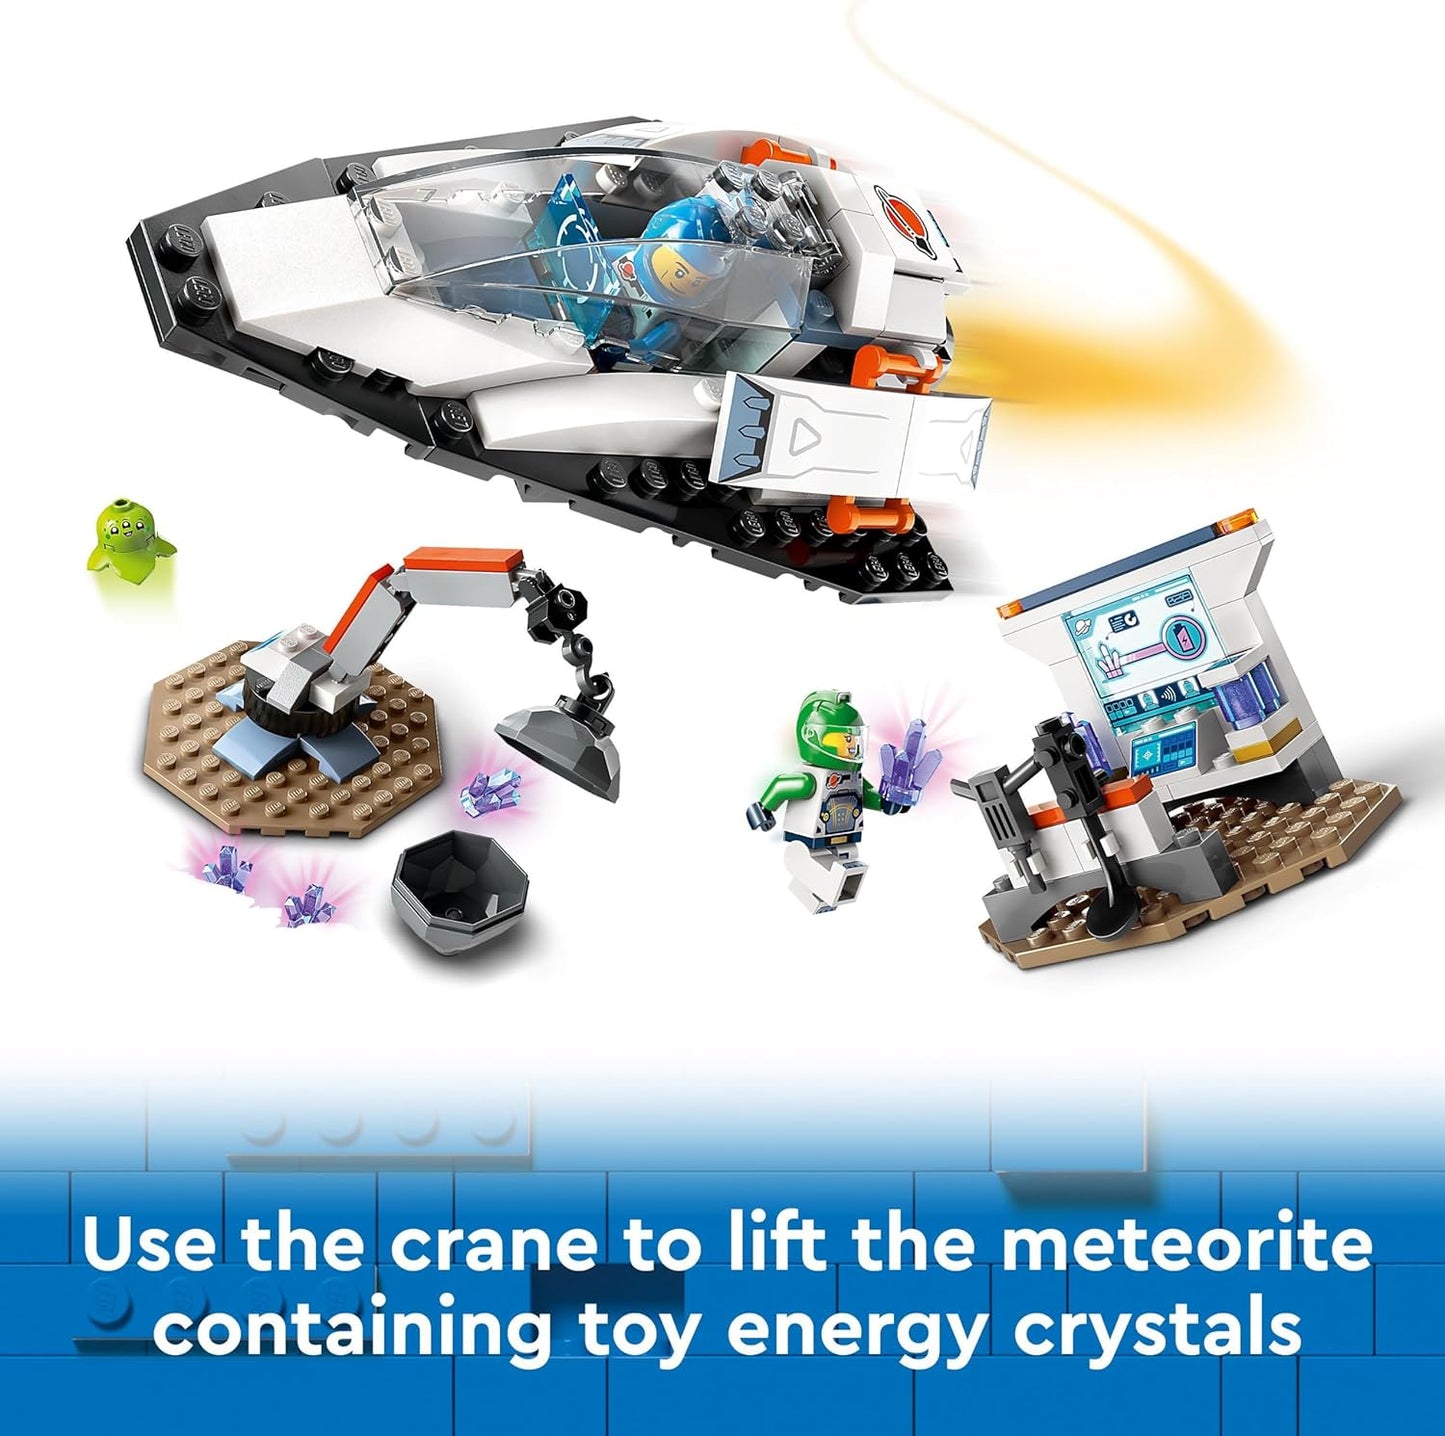 LEGO Conjunto de nave espacial urbana e descoberta de asteróides, brinquedo de estação espacial para meninos e meninas de mais de 4 anos, com uma figura alienígena e 2 minifiguras de astronauta para brincadeiras de simulação, presente